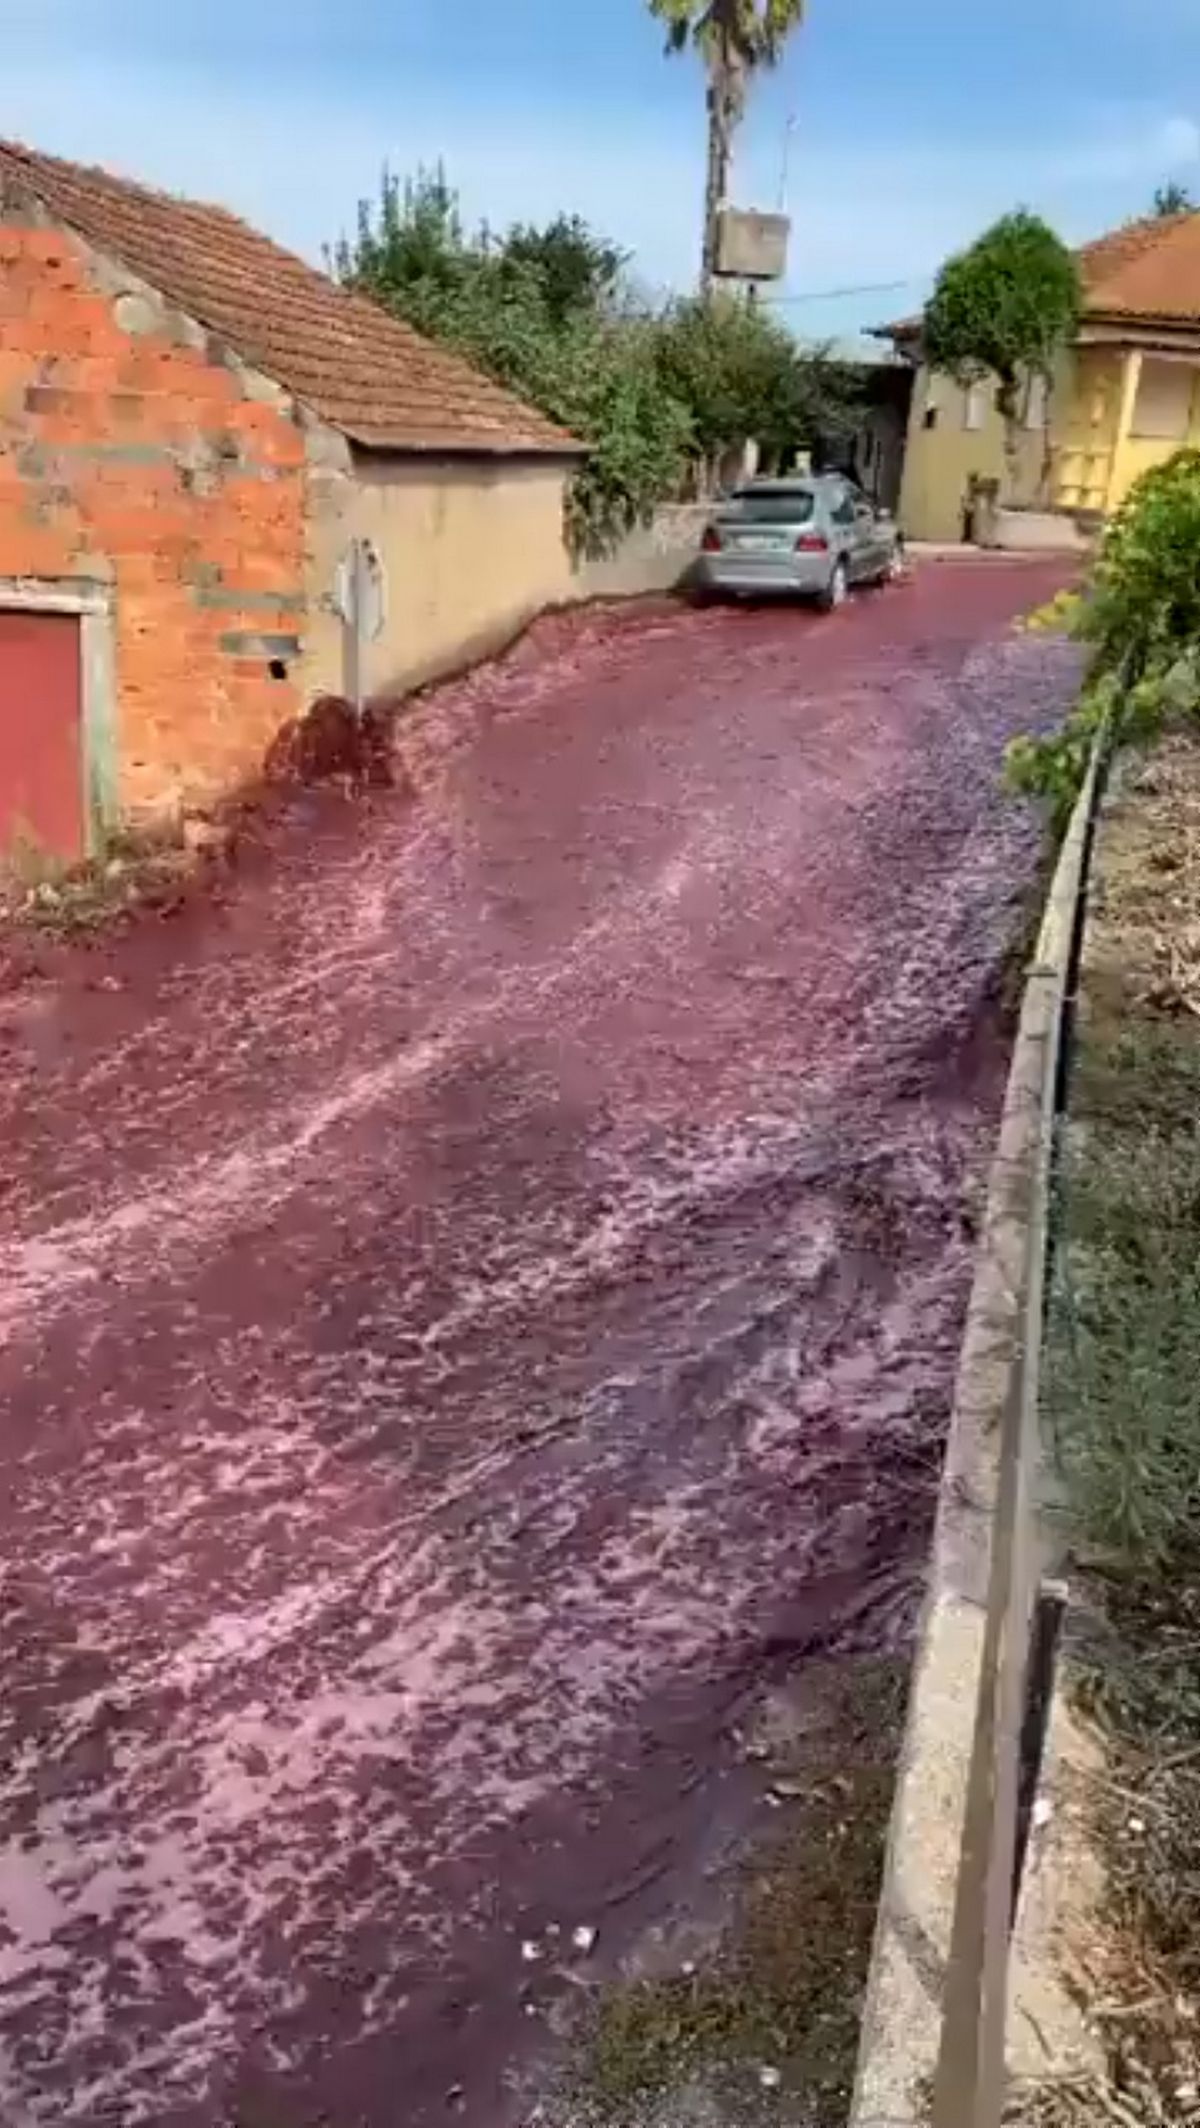 La ville de São Lorenco de Bairro, qui compte 2 000 habitants, a été témoin de ce déversement massif de vin, équivalent à une piscine olympique.